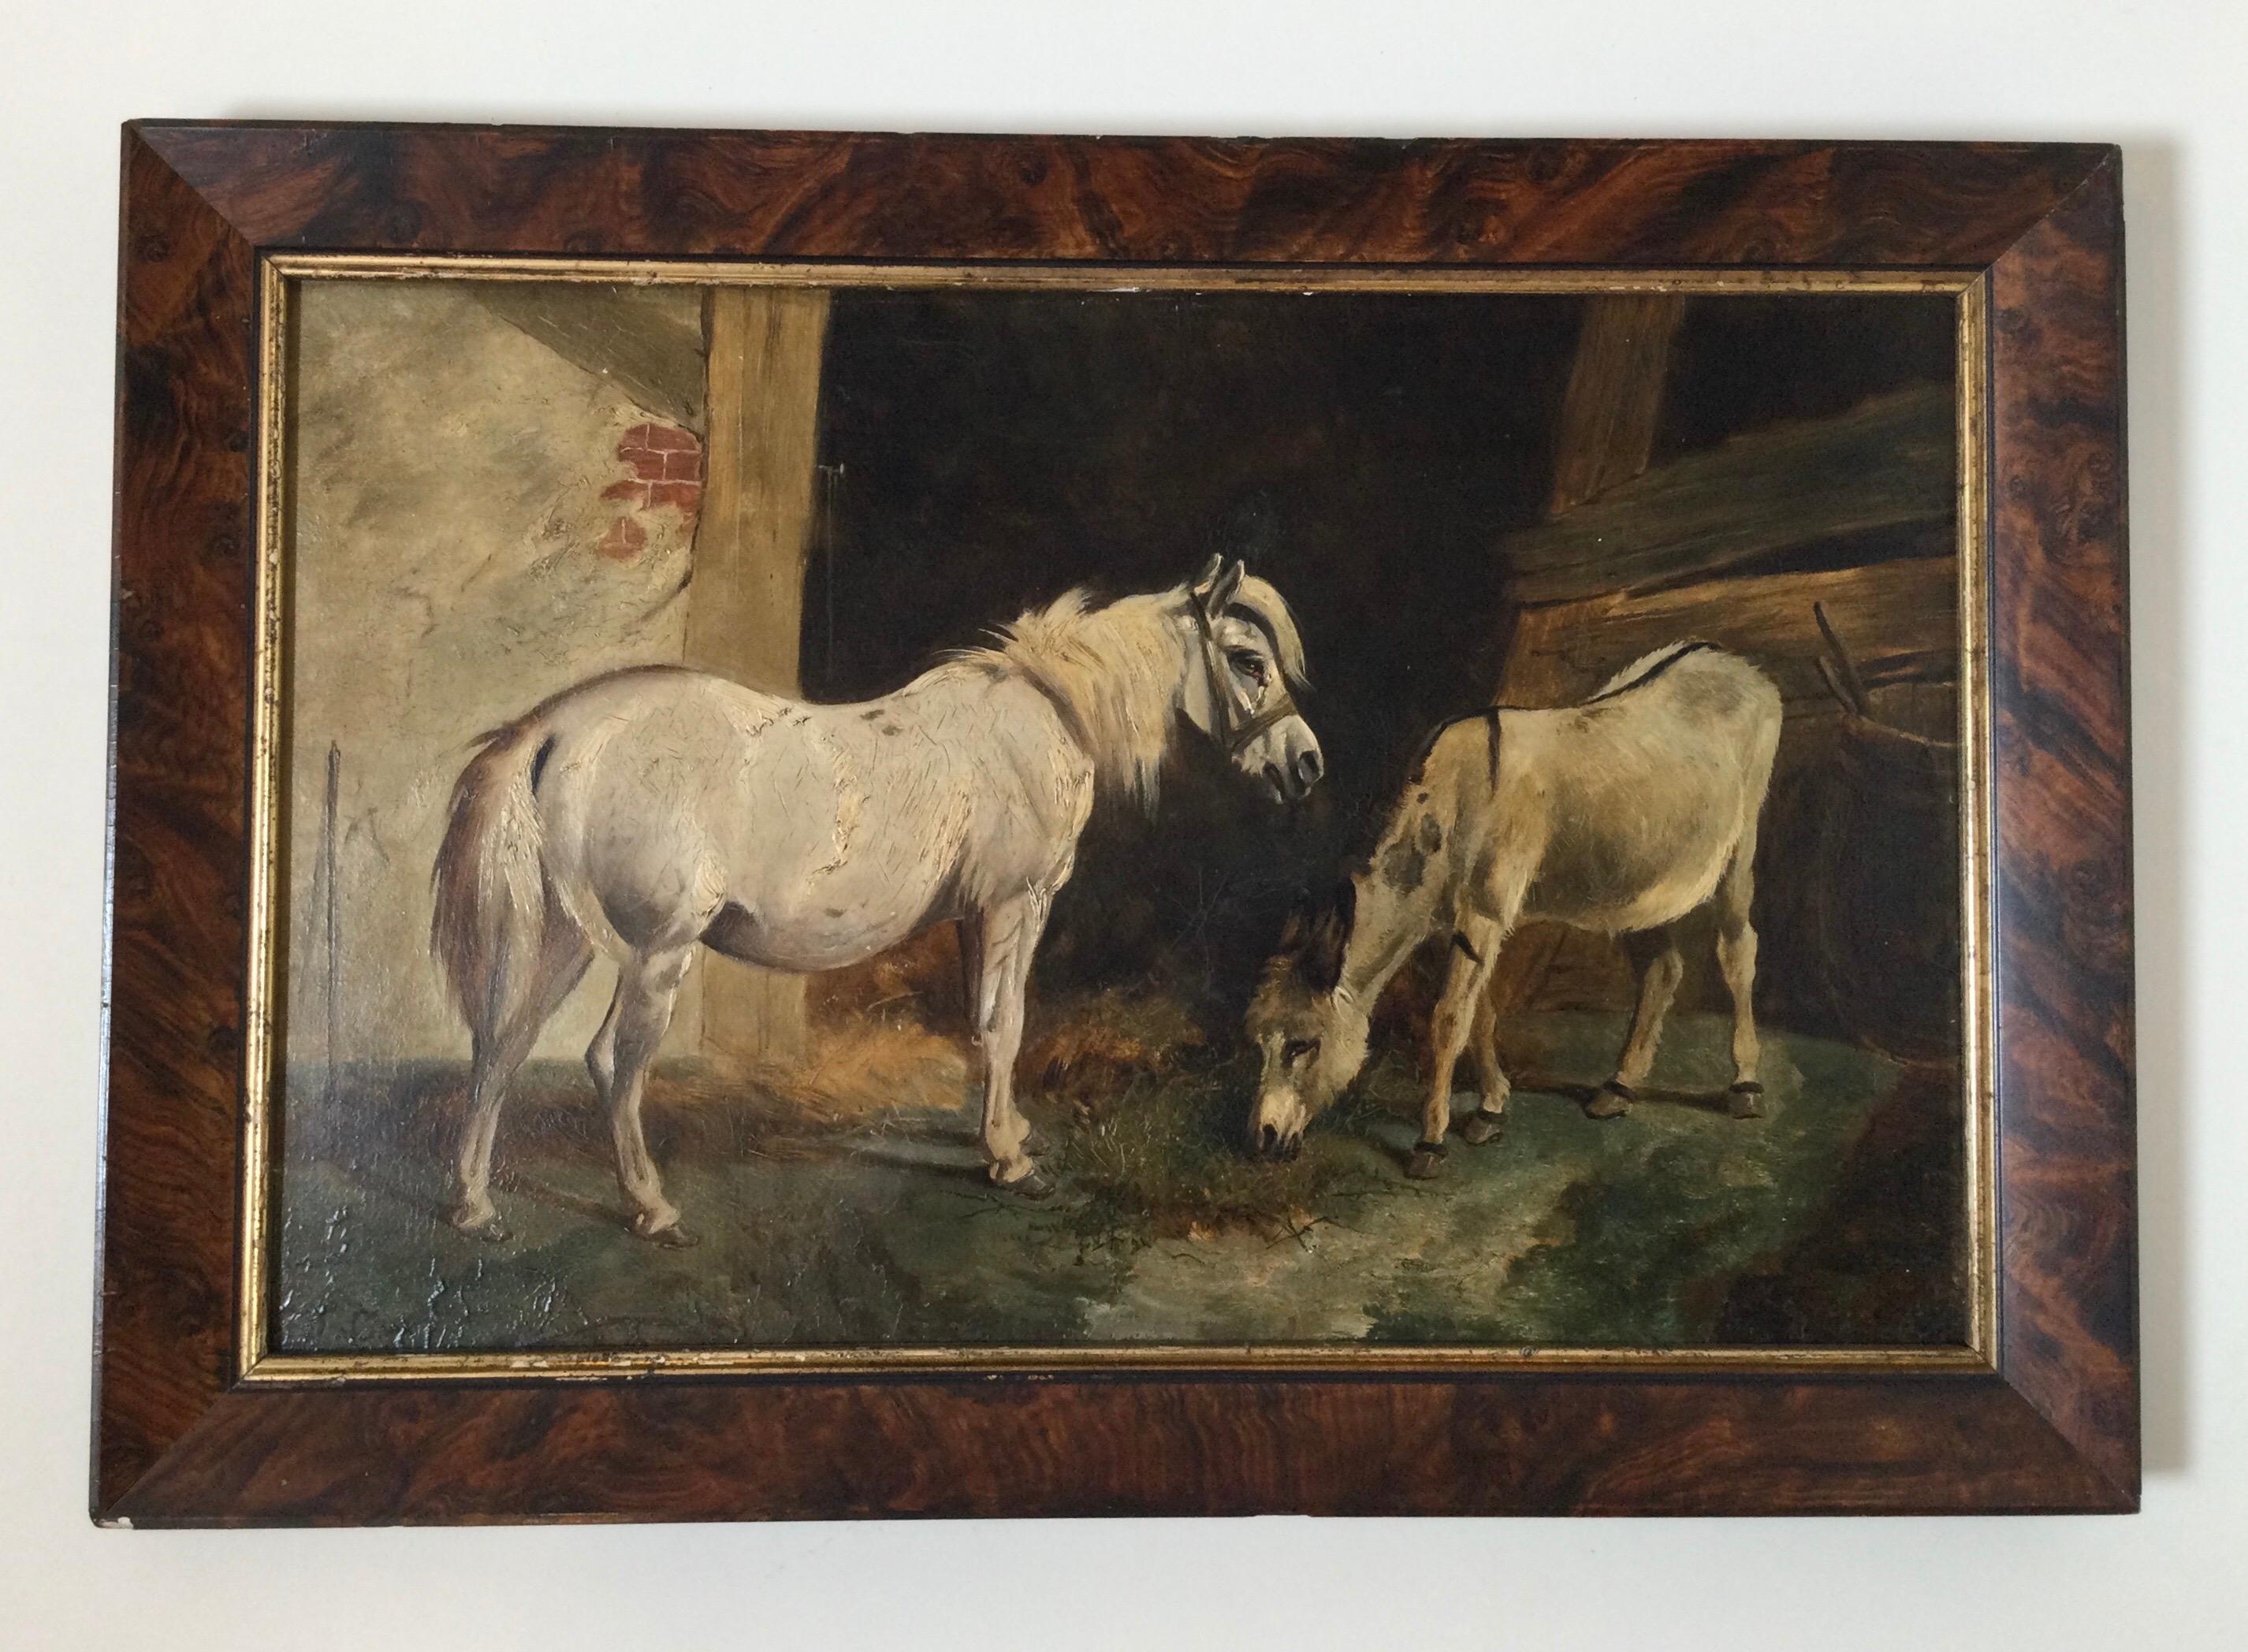 Scène d'écurie, peinture à l'huile sur carton, fin du XIXe siècle. Arrière-plan intéressant avec l'argent et l'âne. Mesures : 21 1/2